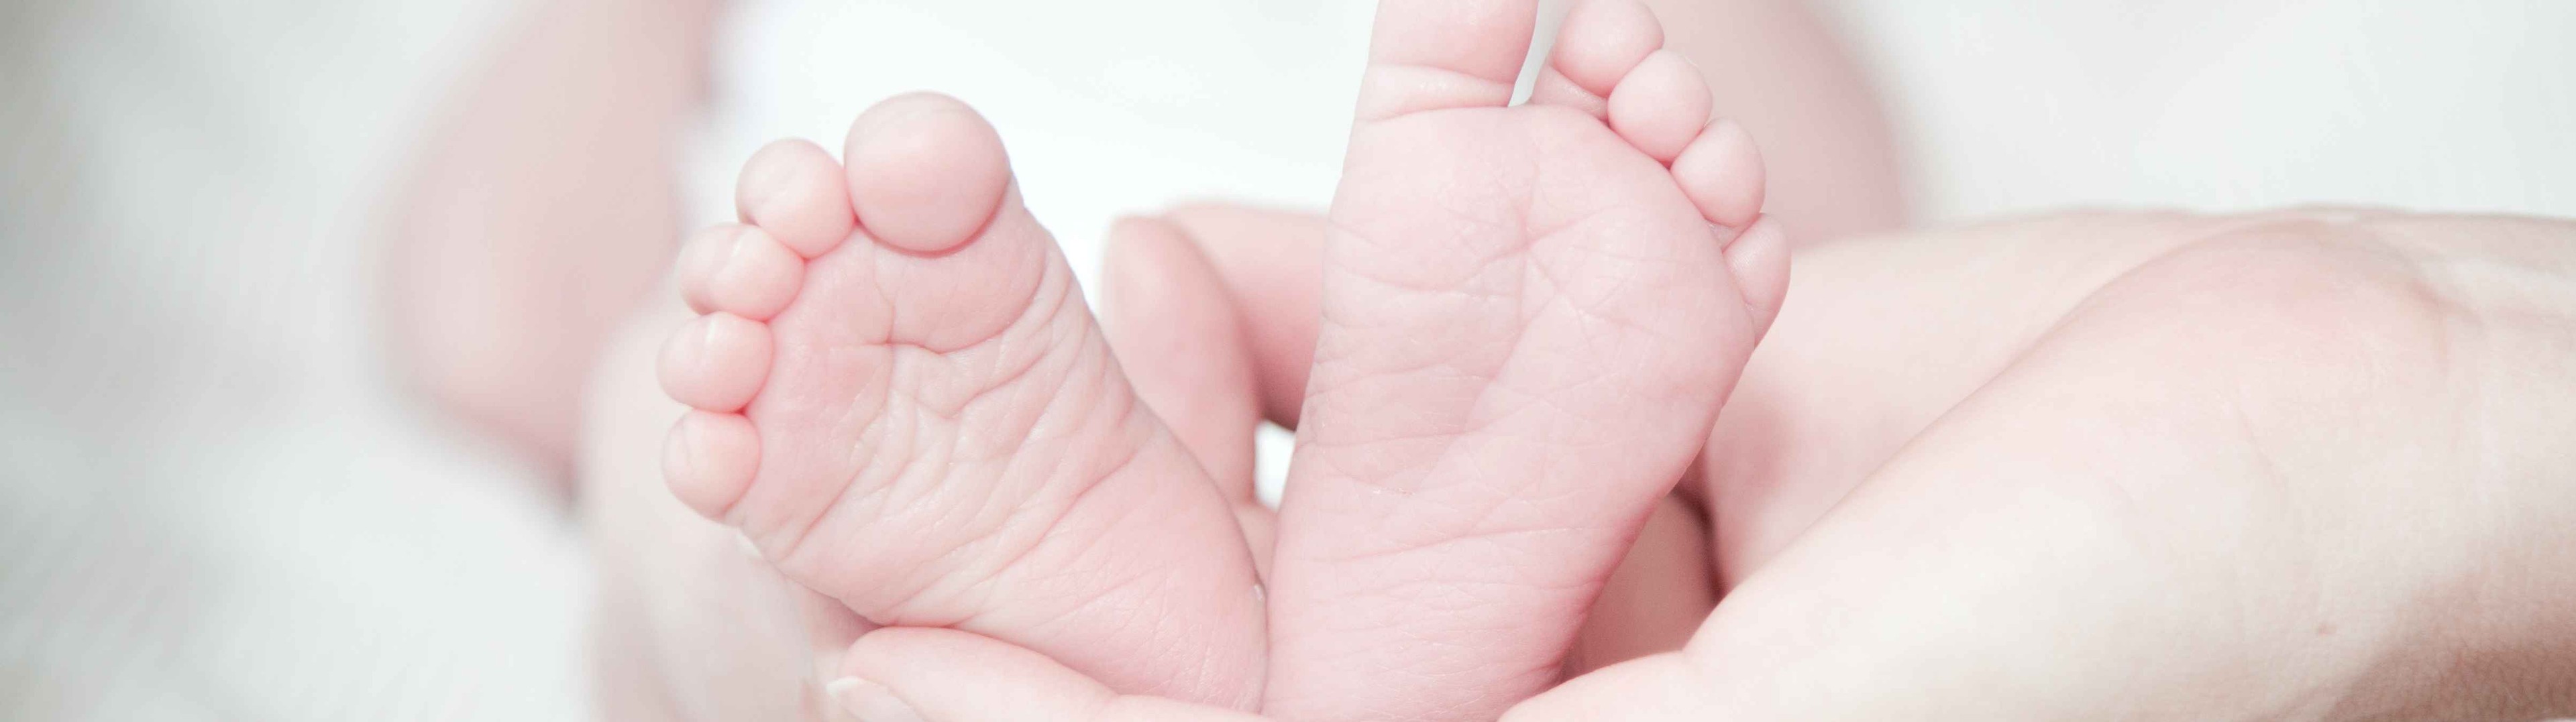 El hospital Reina Sofía de Murcia avanza hacia una humanización de la maternidad y la lactancia 